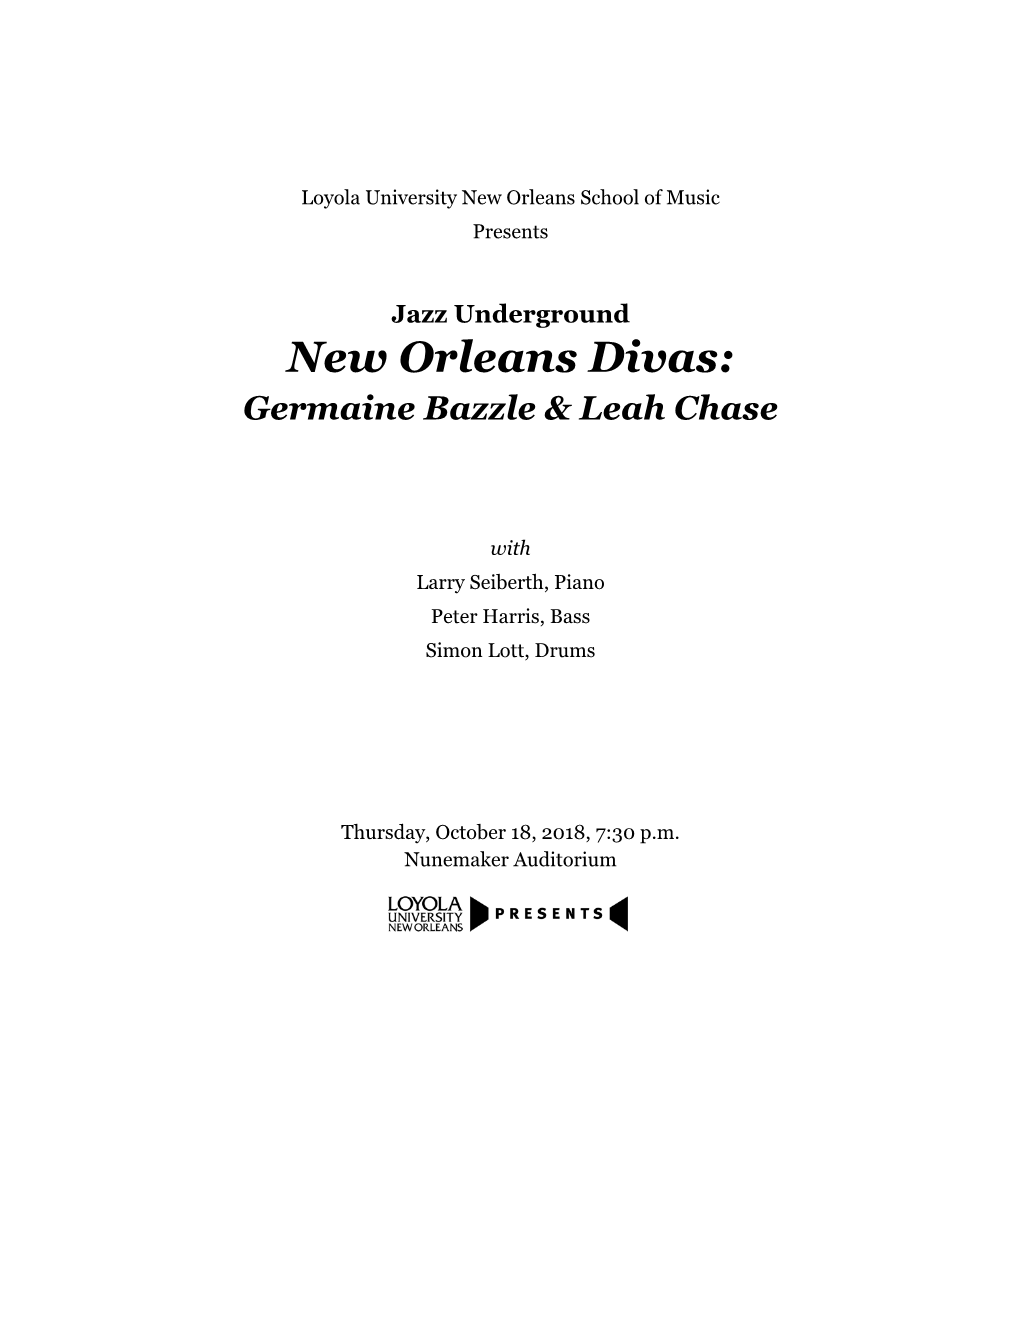 New Orleans Divas: Germaine Bazzle & Leah Chase